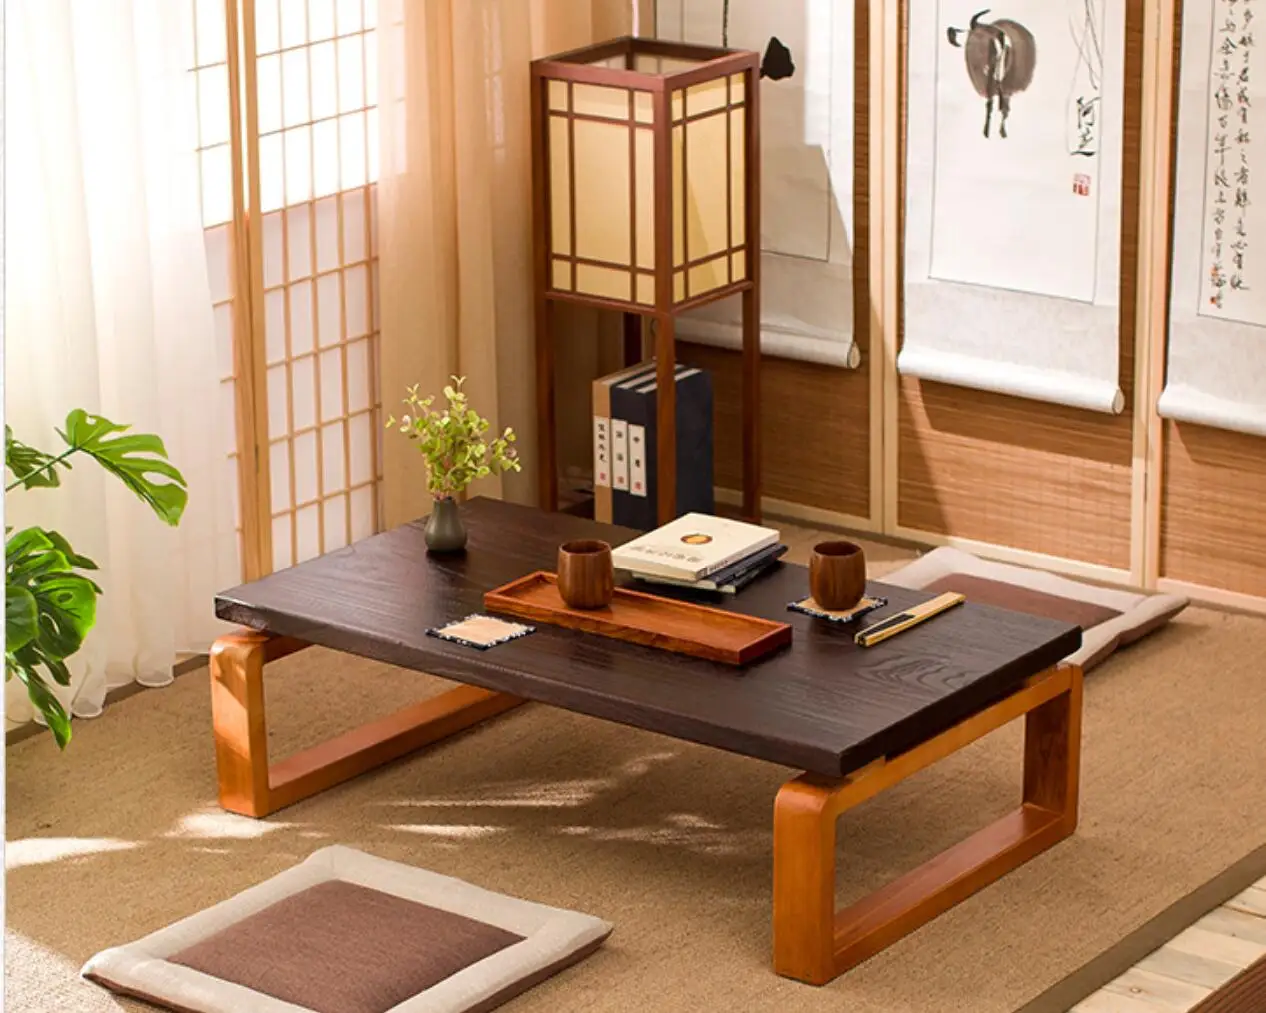 Забронировать столик в японском саду. Столик в японском стиле. Журнальный стол в японском стиле. Чайный столик в японском стиле. Кофейный столик в японском стиле.